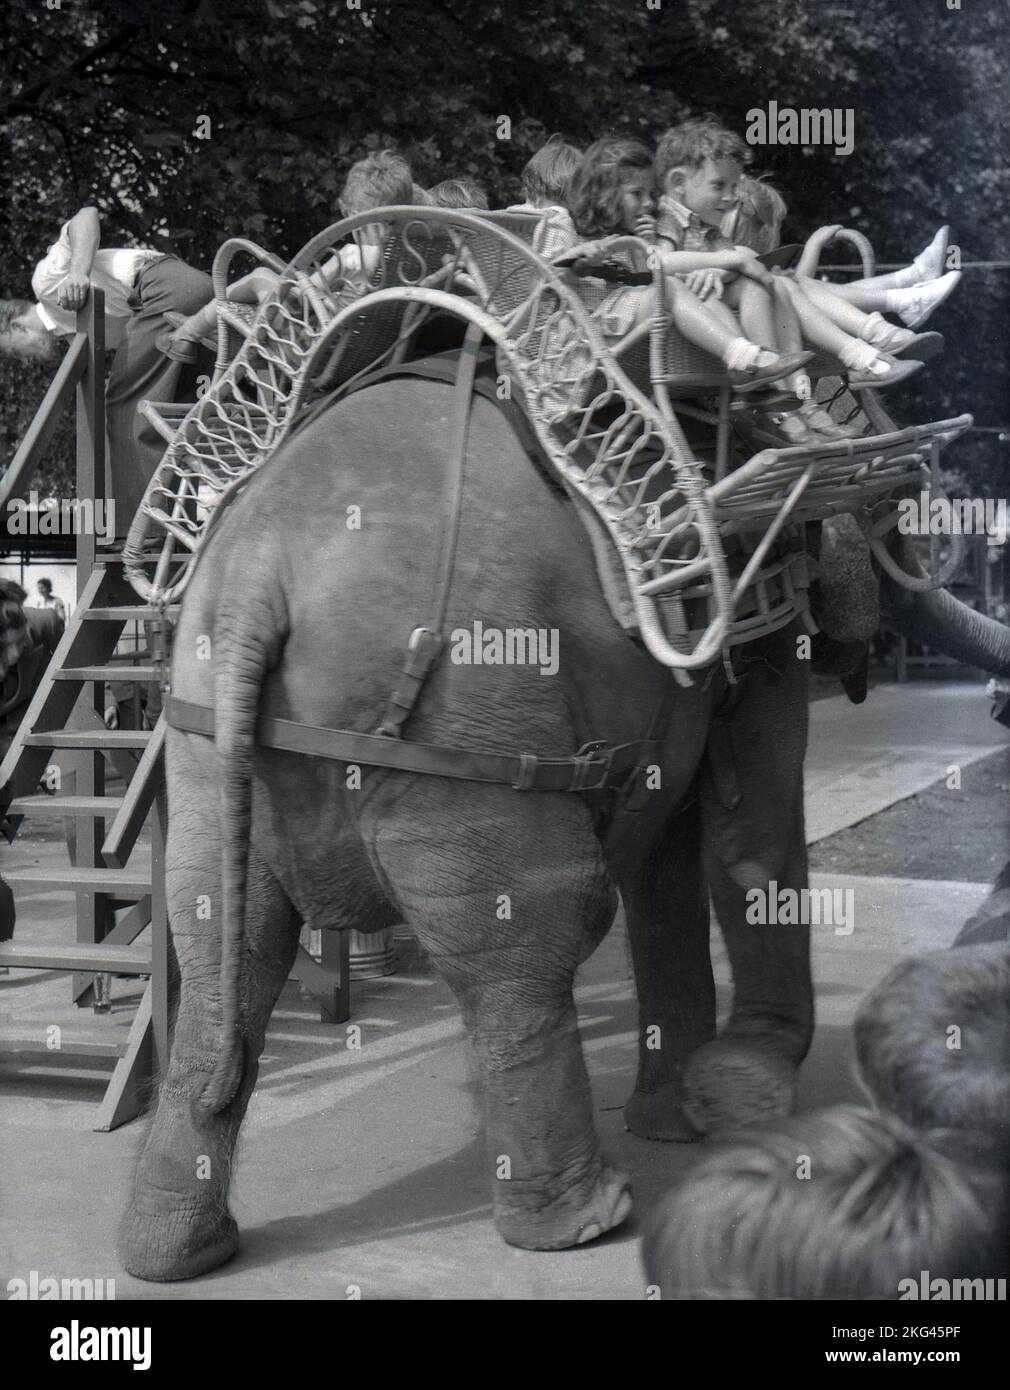 1950s, storico, diversi bambini in un giro in elefante allo zoo di Londra, seduti in un posto in vimini arruiato con il nome 'Rusty', Inghilterra, Regno Unito. Rusty era un elefante asiatico femminile che visse fino al 1969 allo Zoo di Londra. Foto Stock